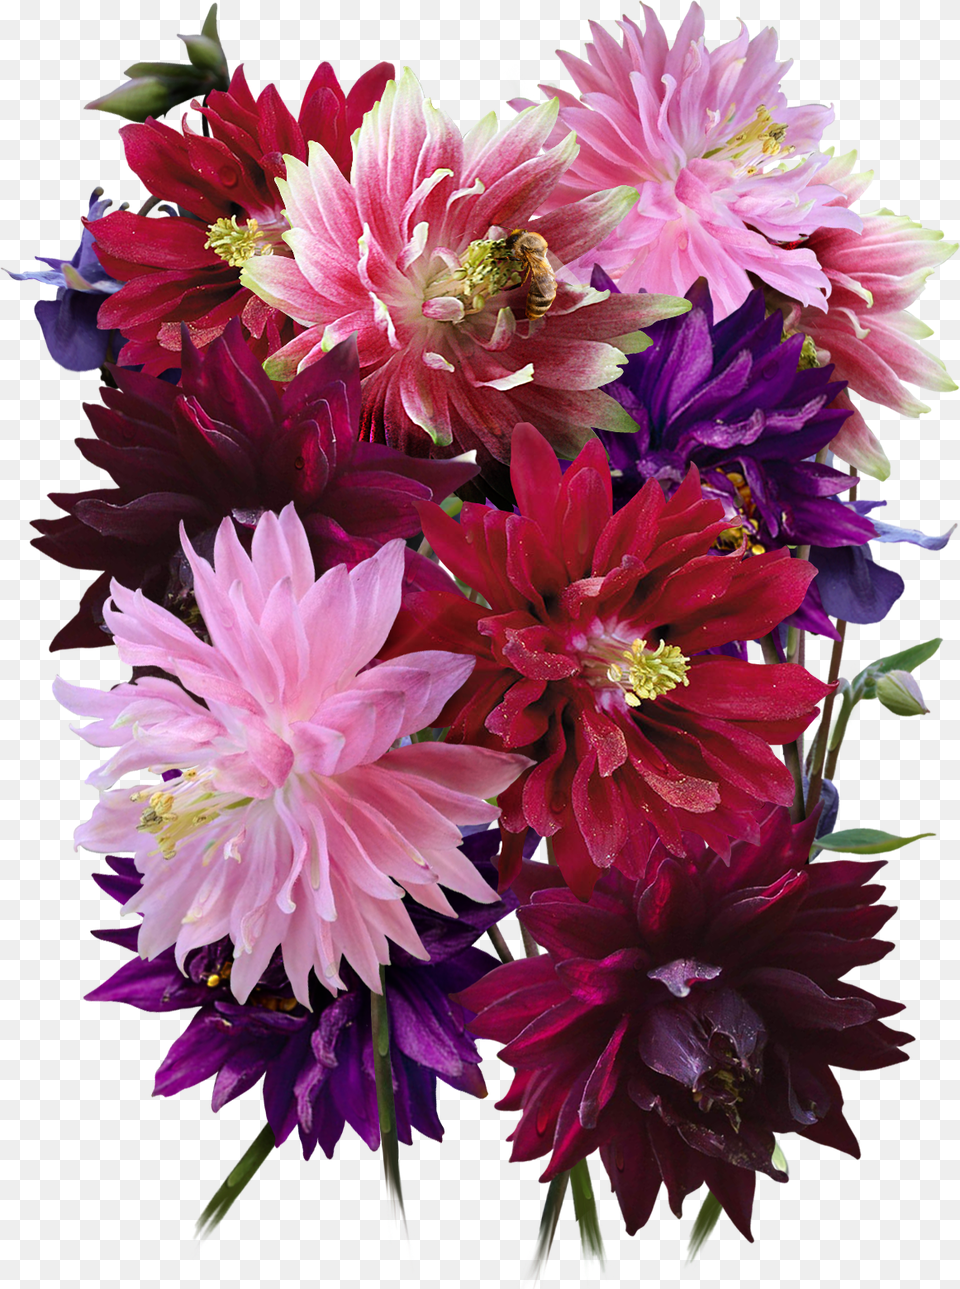 Barlow Columbine Seeds For Plantingclass Lazyload Bouquet, Flower Arrangement, Plant, Dahlia, Flower Png Image